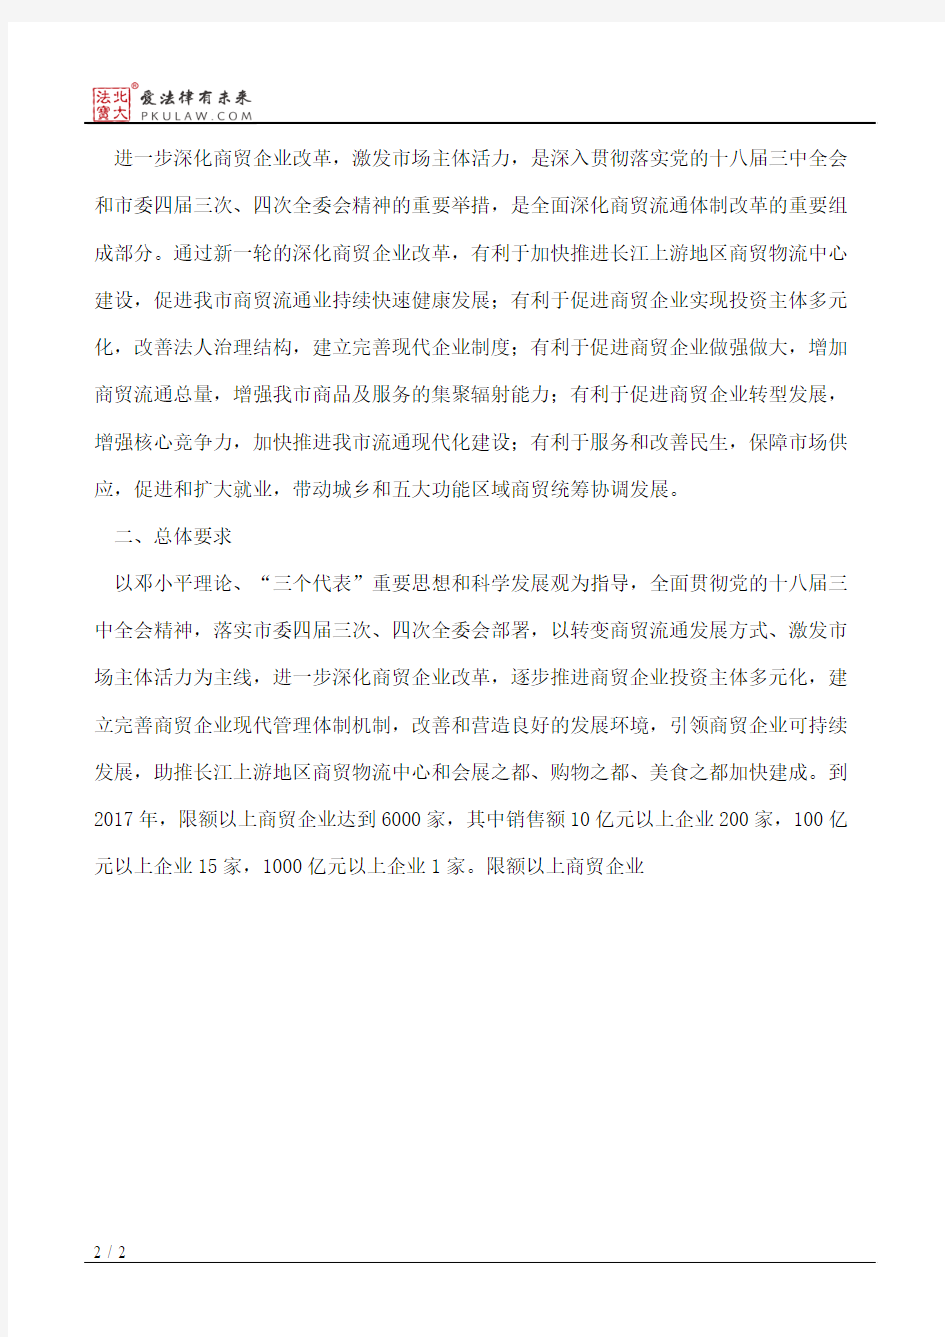 重庆市商业委员会关于进一步深化商贸企业改革激发市场主体活力的意见